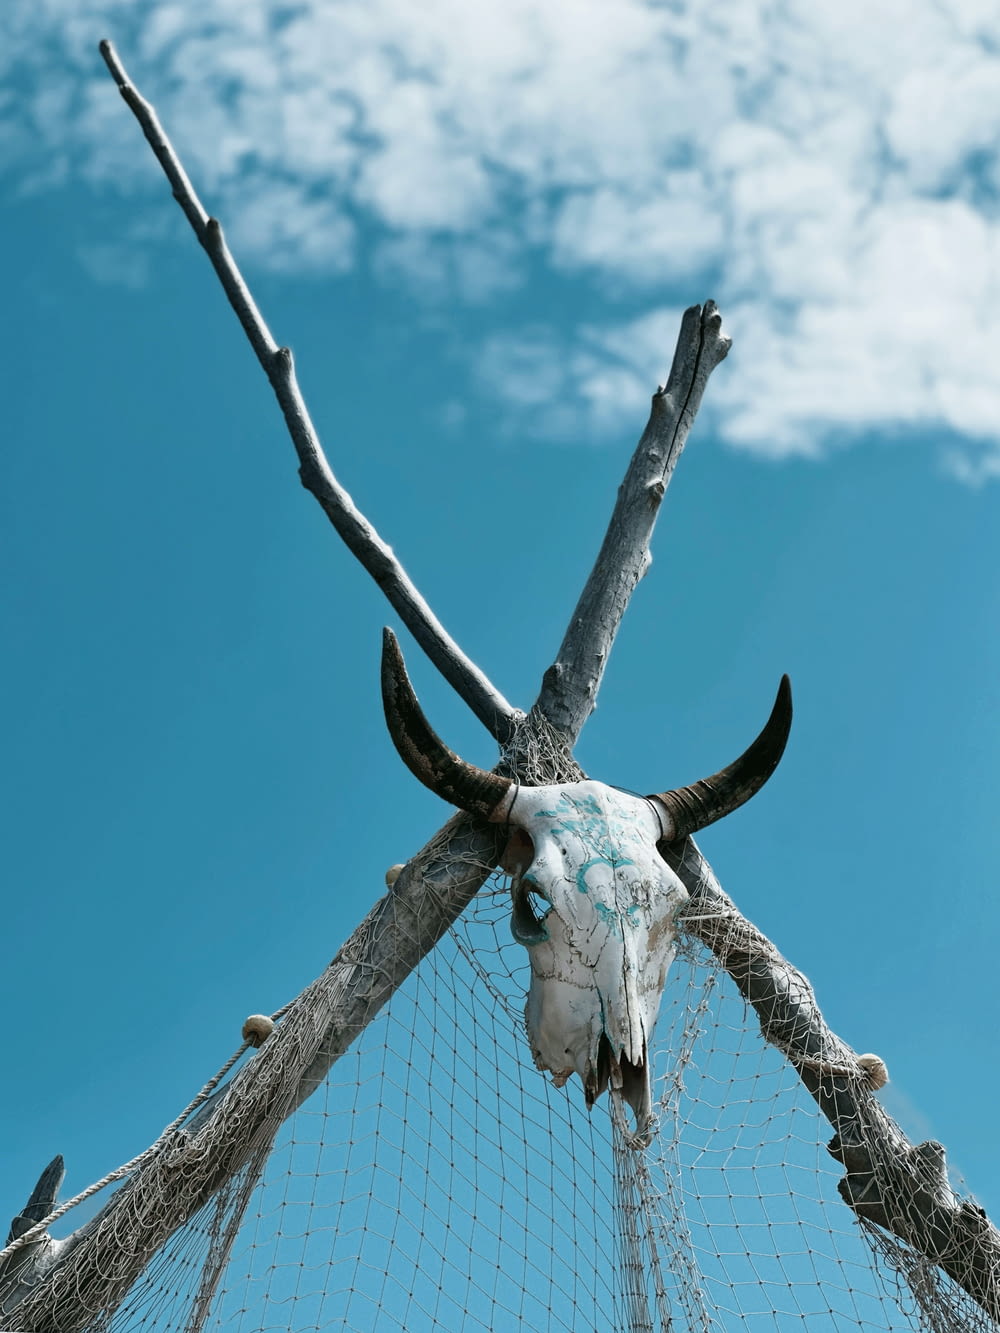 a bull's head is stuck in a net